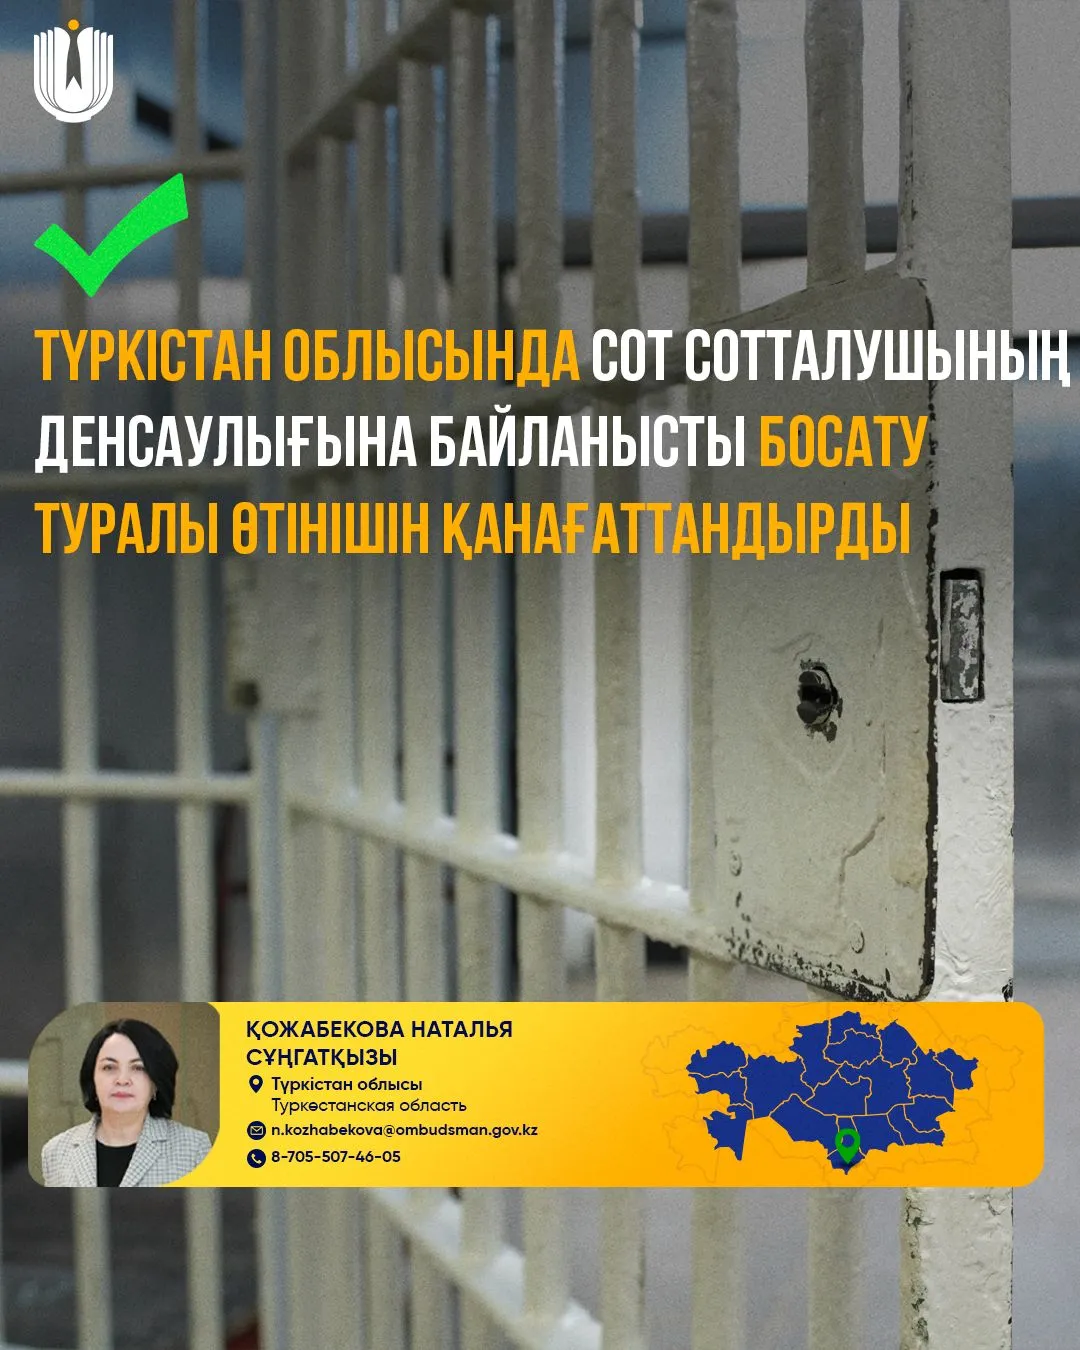 Осужденного освободили по состоянию здоровья в Туркестанской области фото taspanews.kz от 07/01/2024 11:19:39 фото на taspanews.kz от 01 июля 2024 11:19